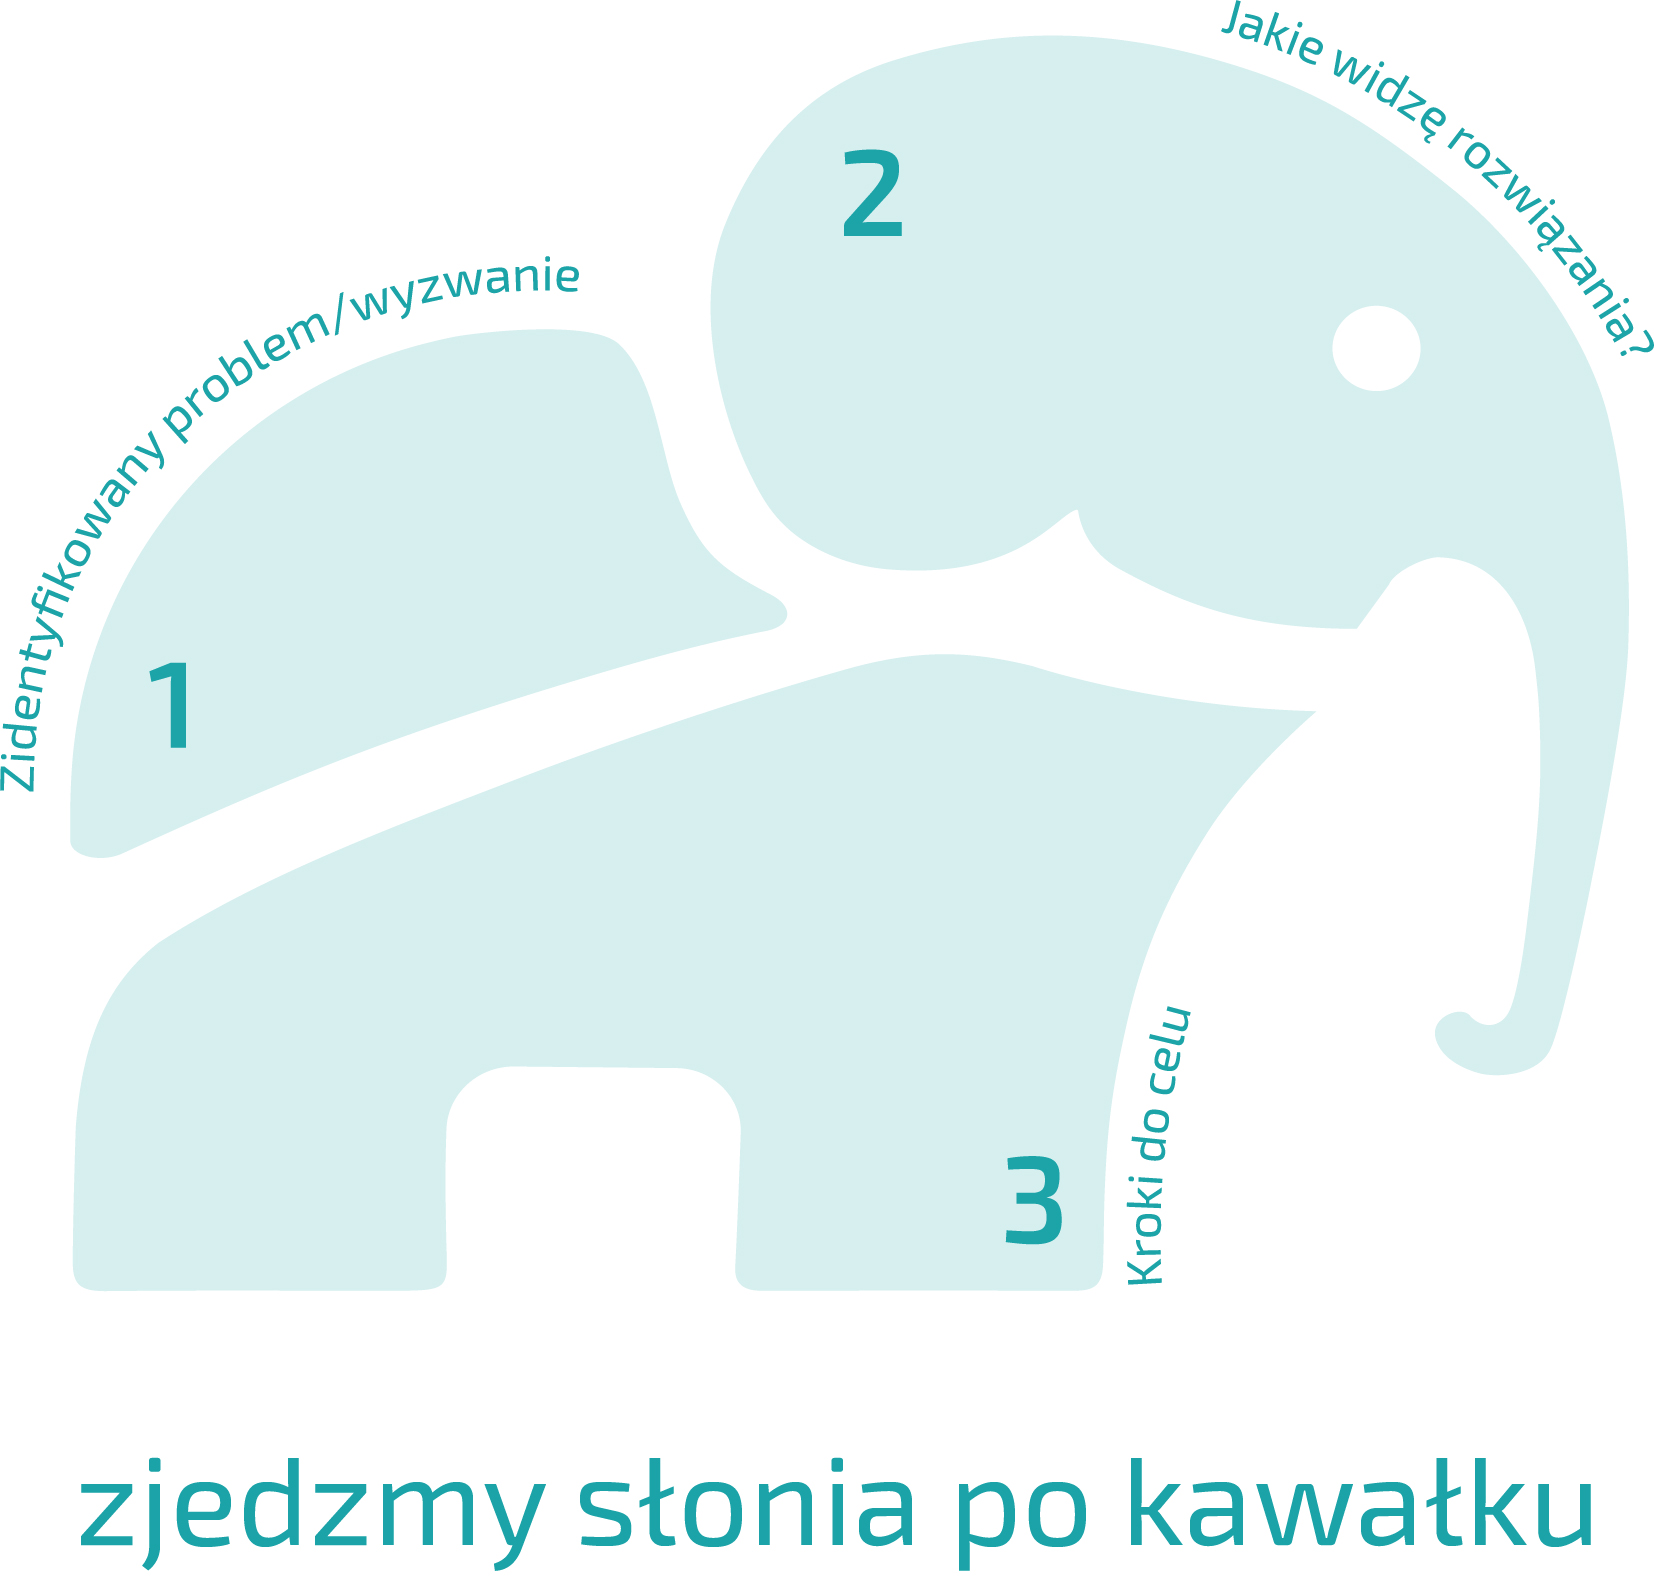 obrazek ze słoniem